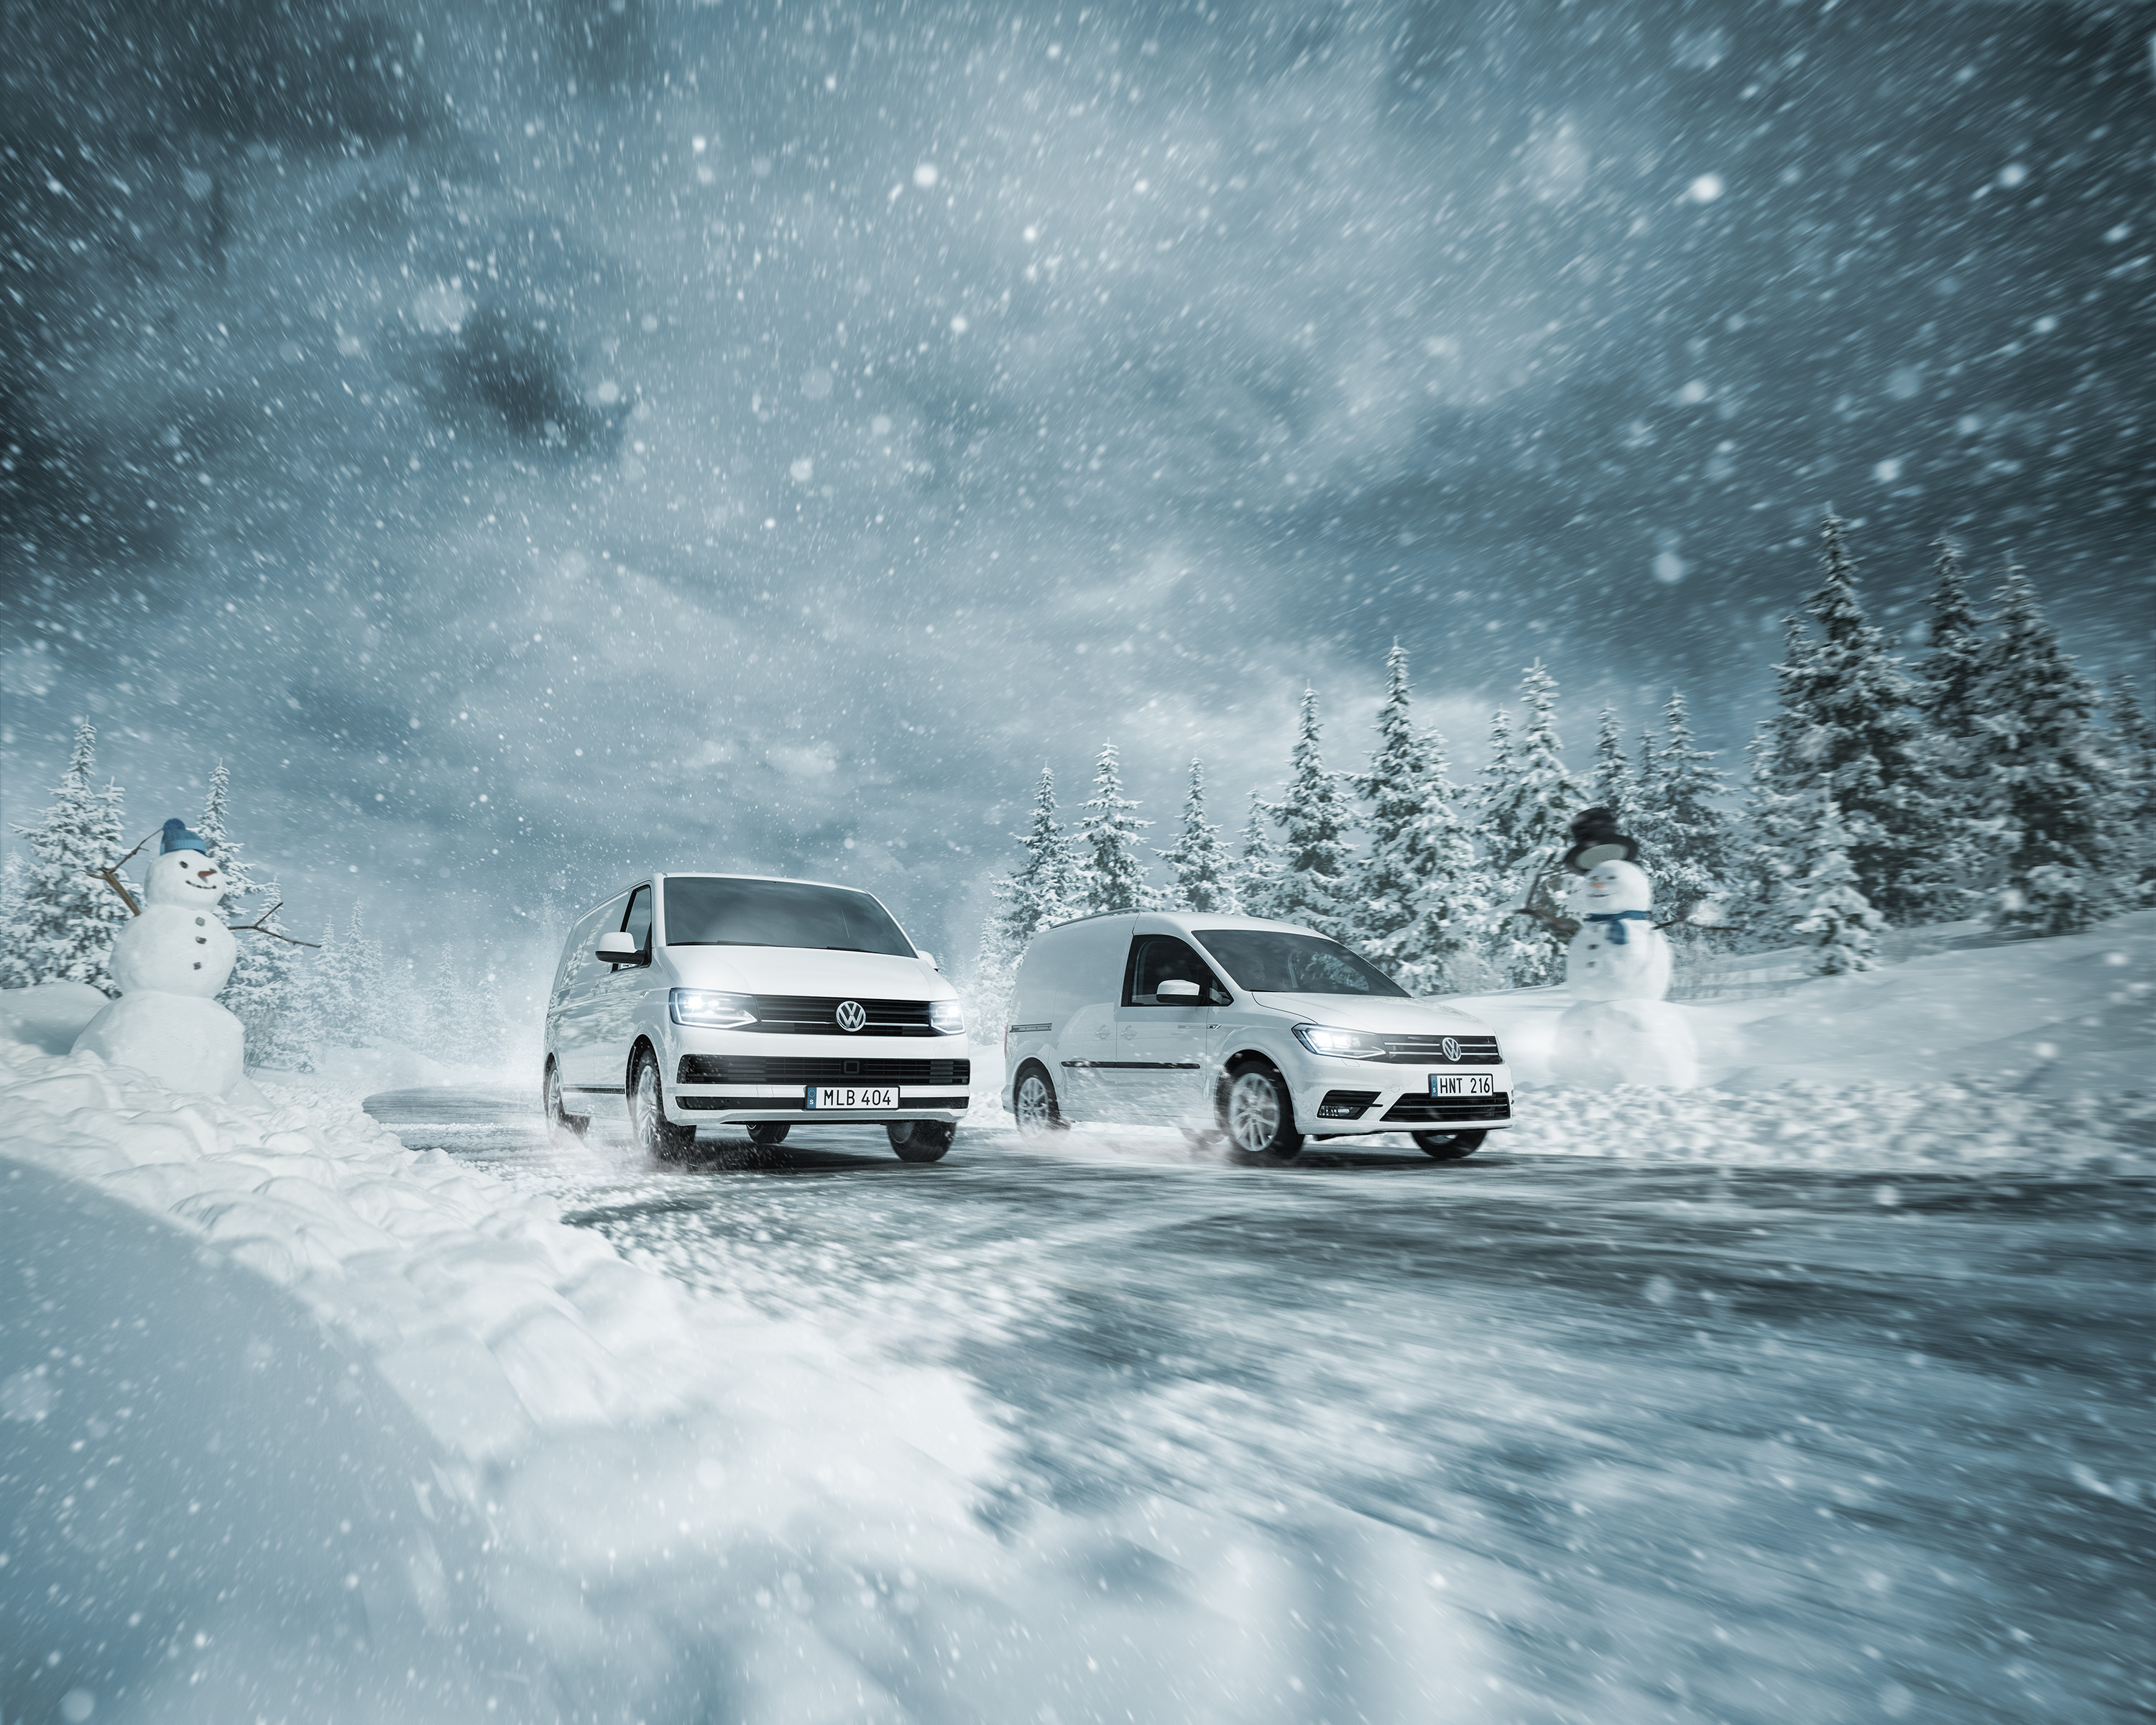 Snowman lifting the hat for Volkswagen Transporter and Caddy four-weel driving in winter landscape. Cars driving on a snowy road. Snögubbe på vägen bilar körs i snö och is. Snöoväder vinterdäck fyrhjulsdrift